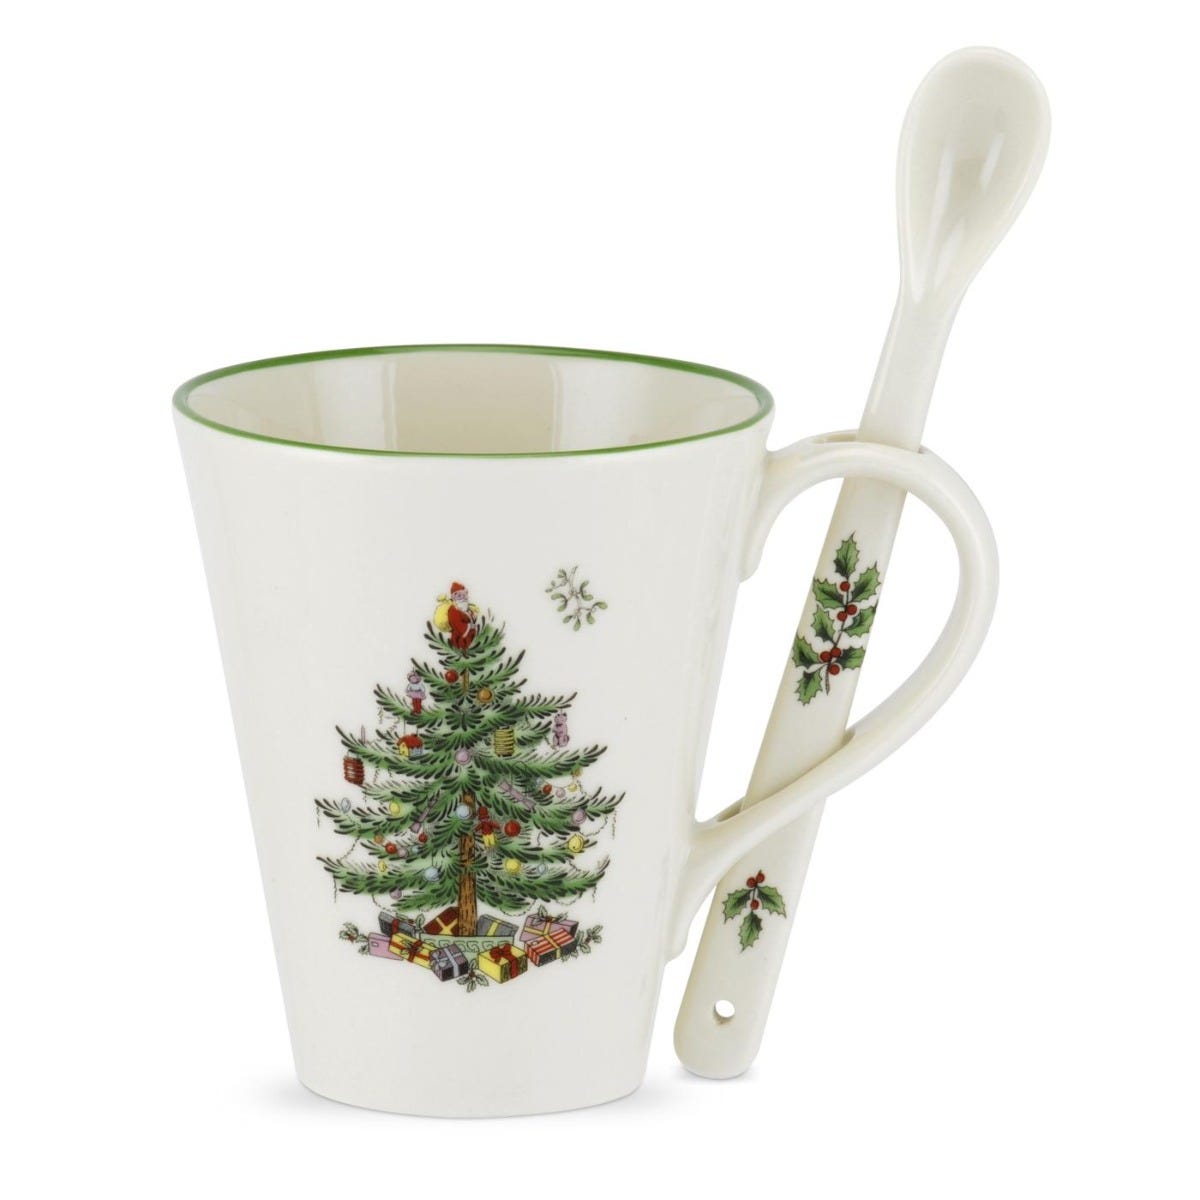 Spode Christmas Tree Mug and Spoon Set